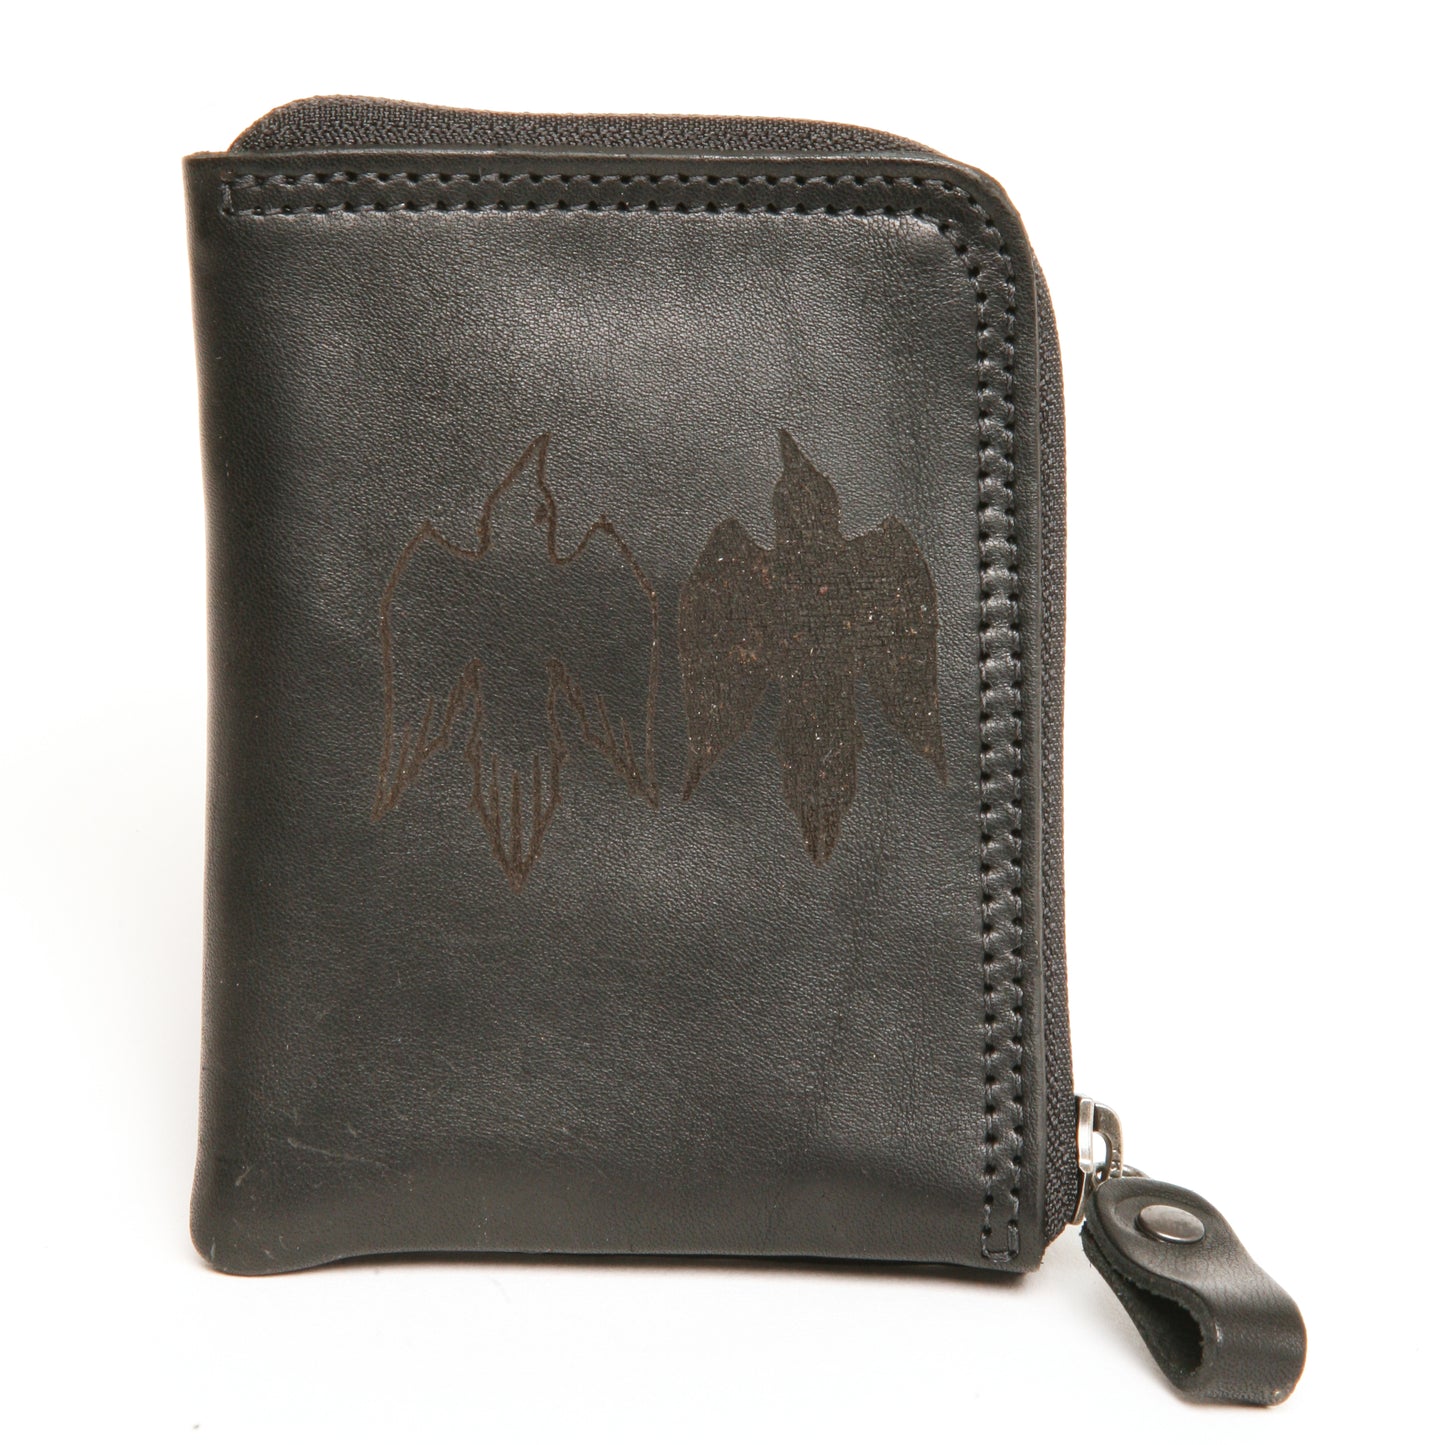 Zip wallet etched